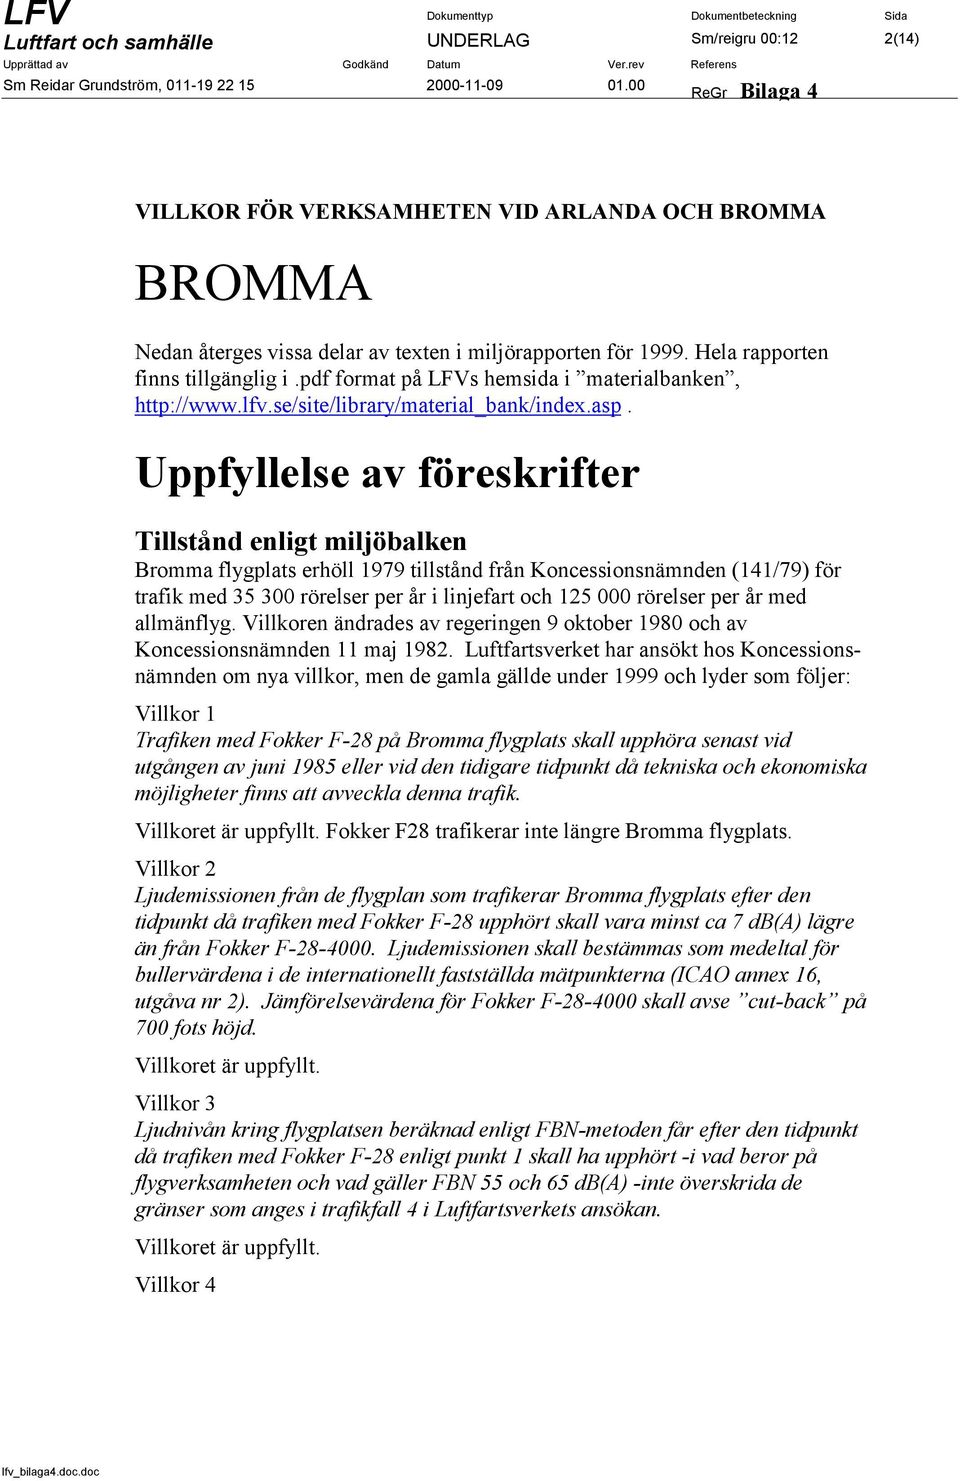 Uppfyllelse av föreskrifter Tillstånd enligt miljöbalken Bromma flygplats erhöll 1979 tillstånd från Koncessionsnämnden (141/79) för trafik med 35 300 rörelser per år i linjefart och 125 000 rörelser